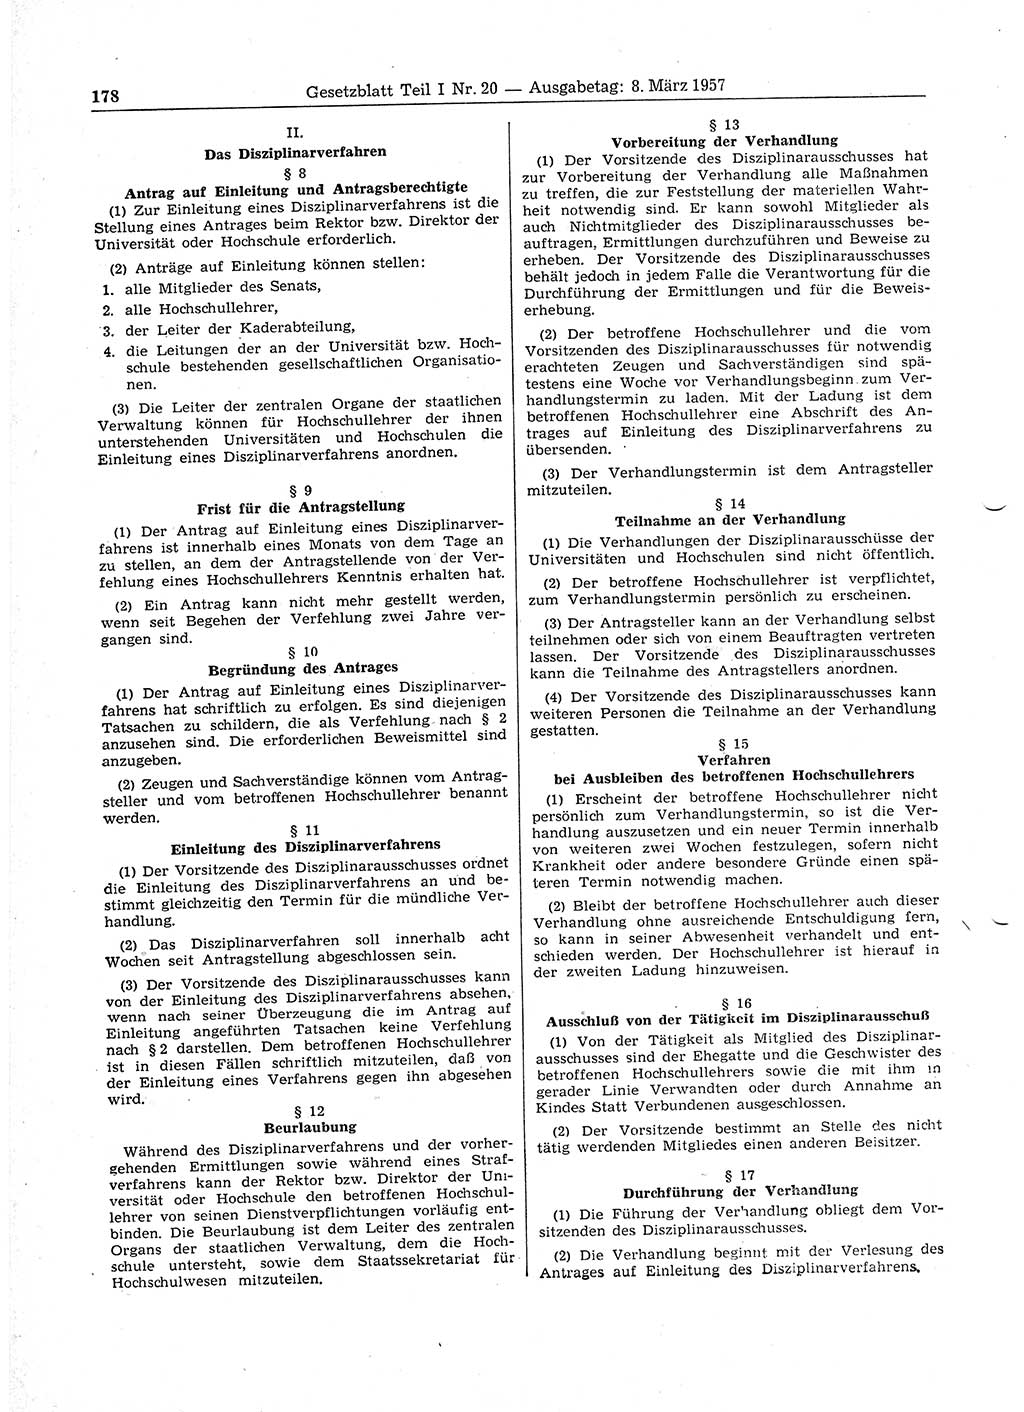 Gesetzblatt (GBl.) der Deutschen Demokratischen Republik (DDR) Teil Ⅰ 1957, Seite 178 (GBl. DDR Ⅰ 1957, S. 178)